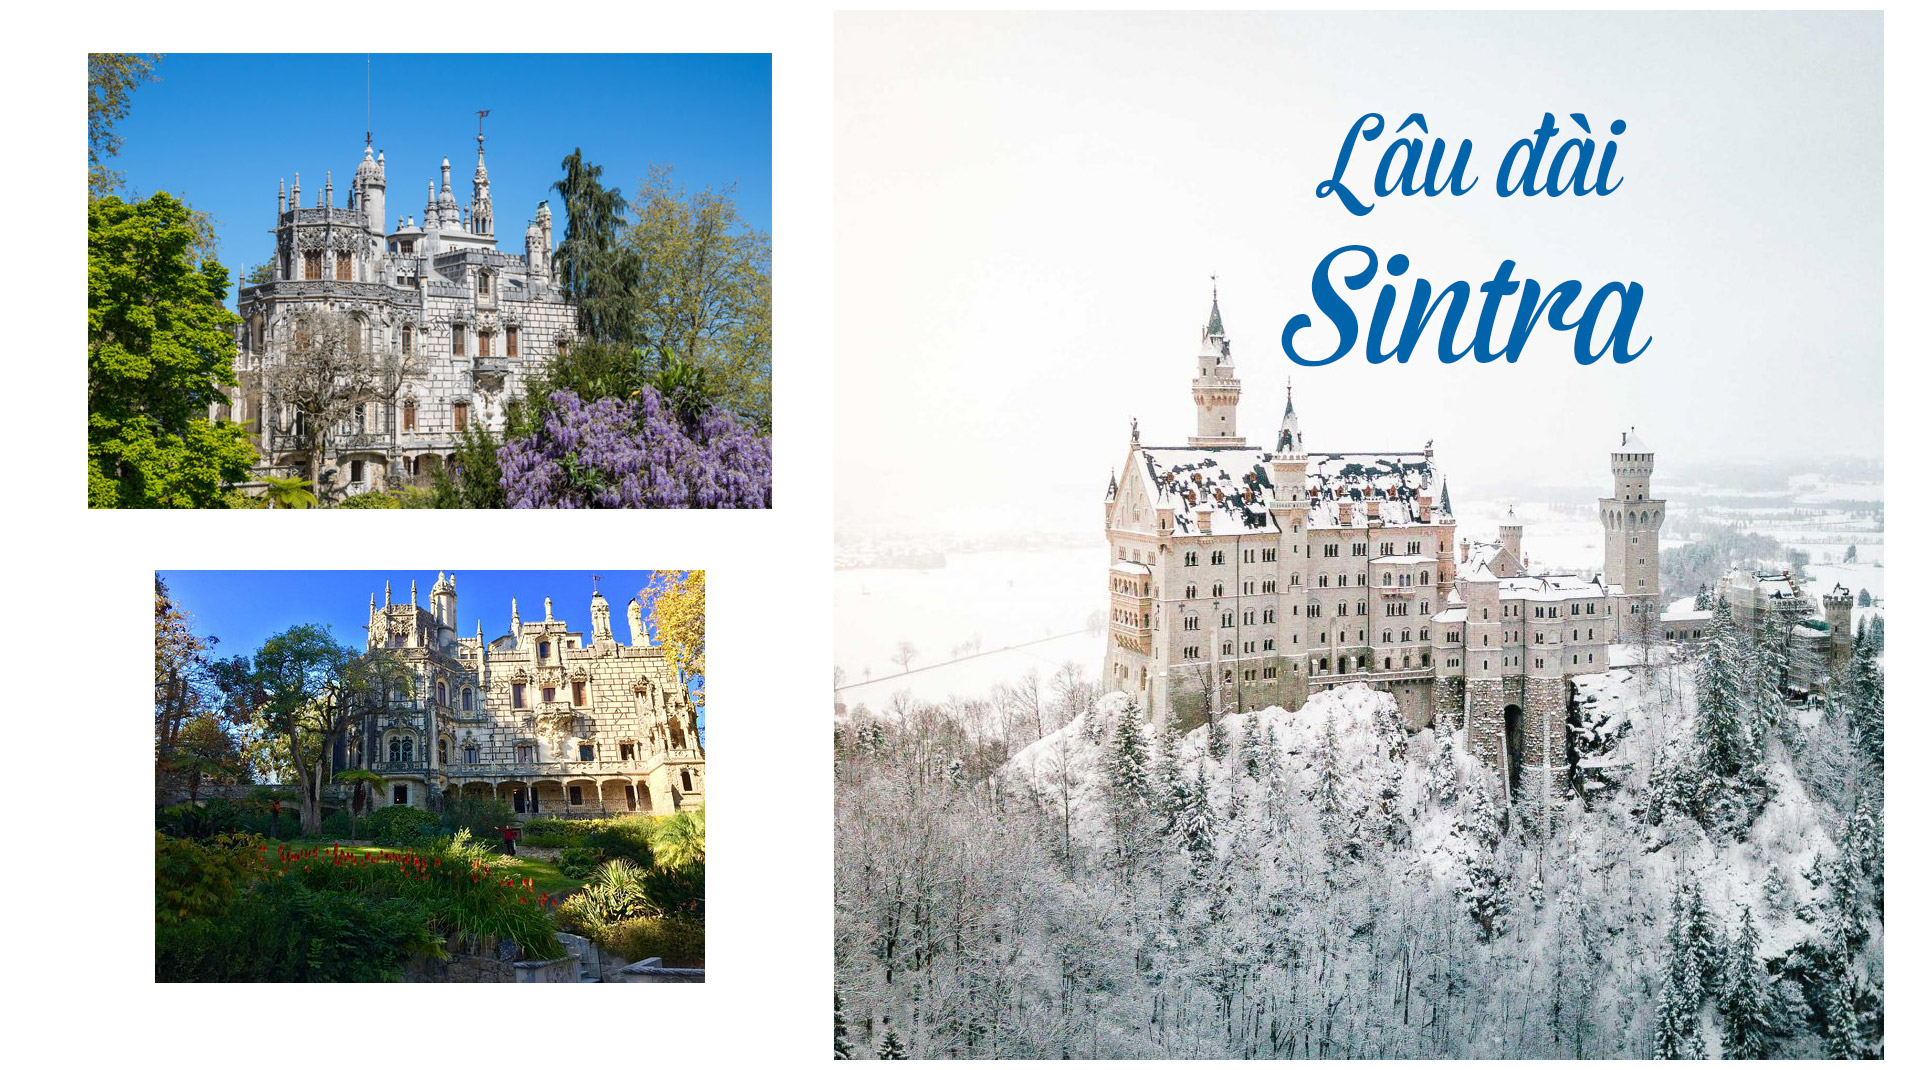 17 lâu đài cổ tích châu Âu đáng đến thăm vào mùa đông - 17